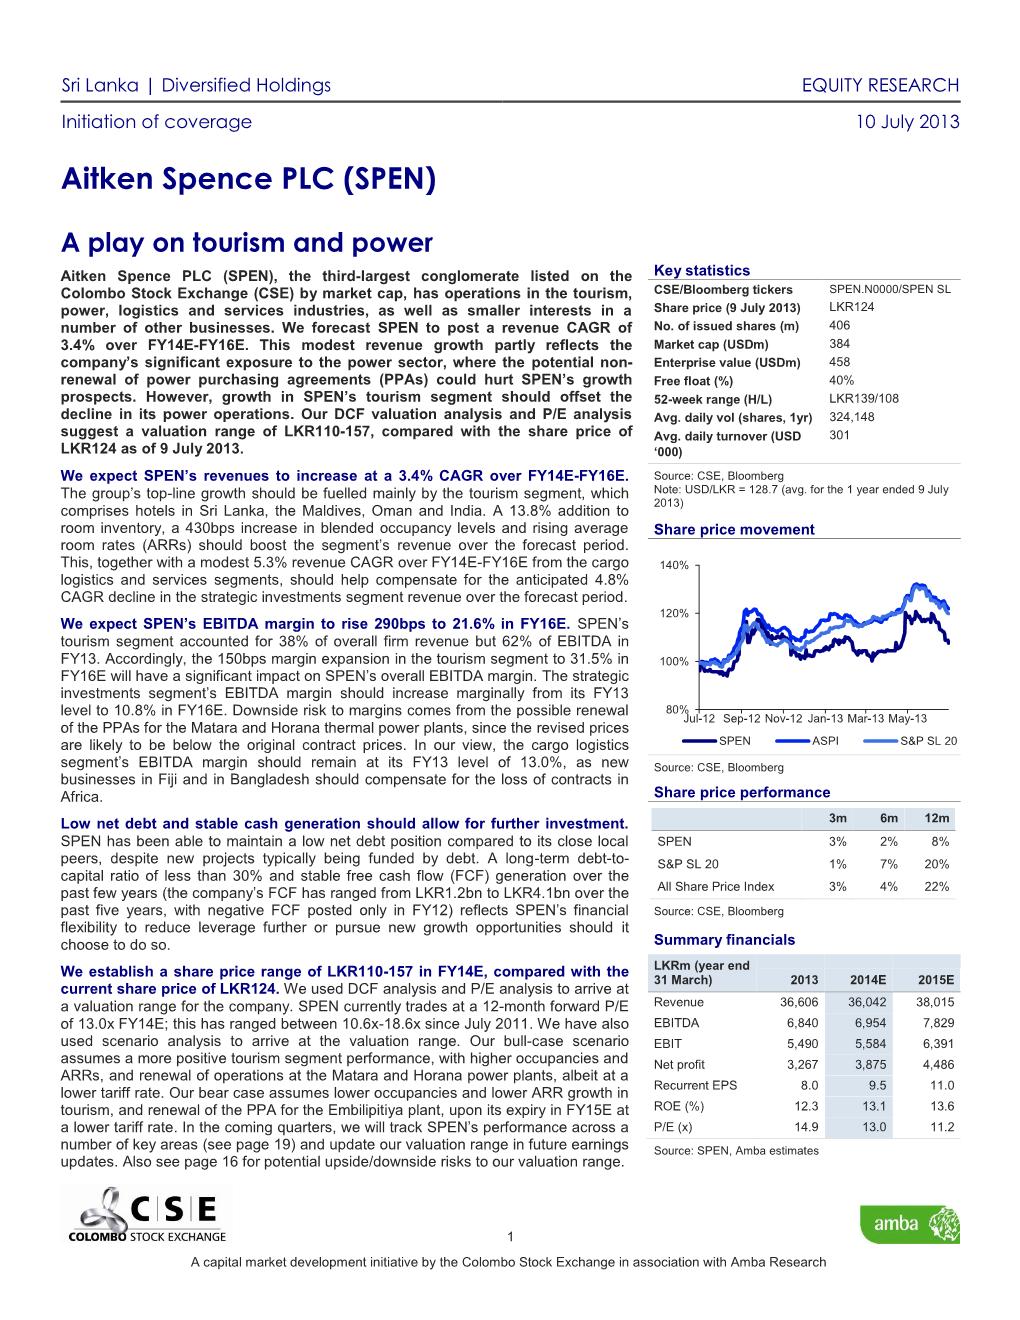 Aitken Spence PLC (SPEN)